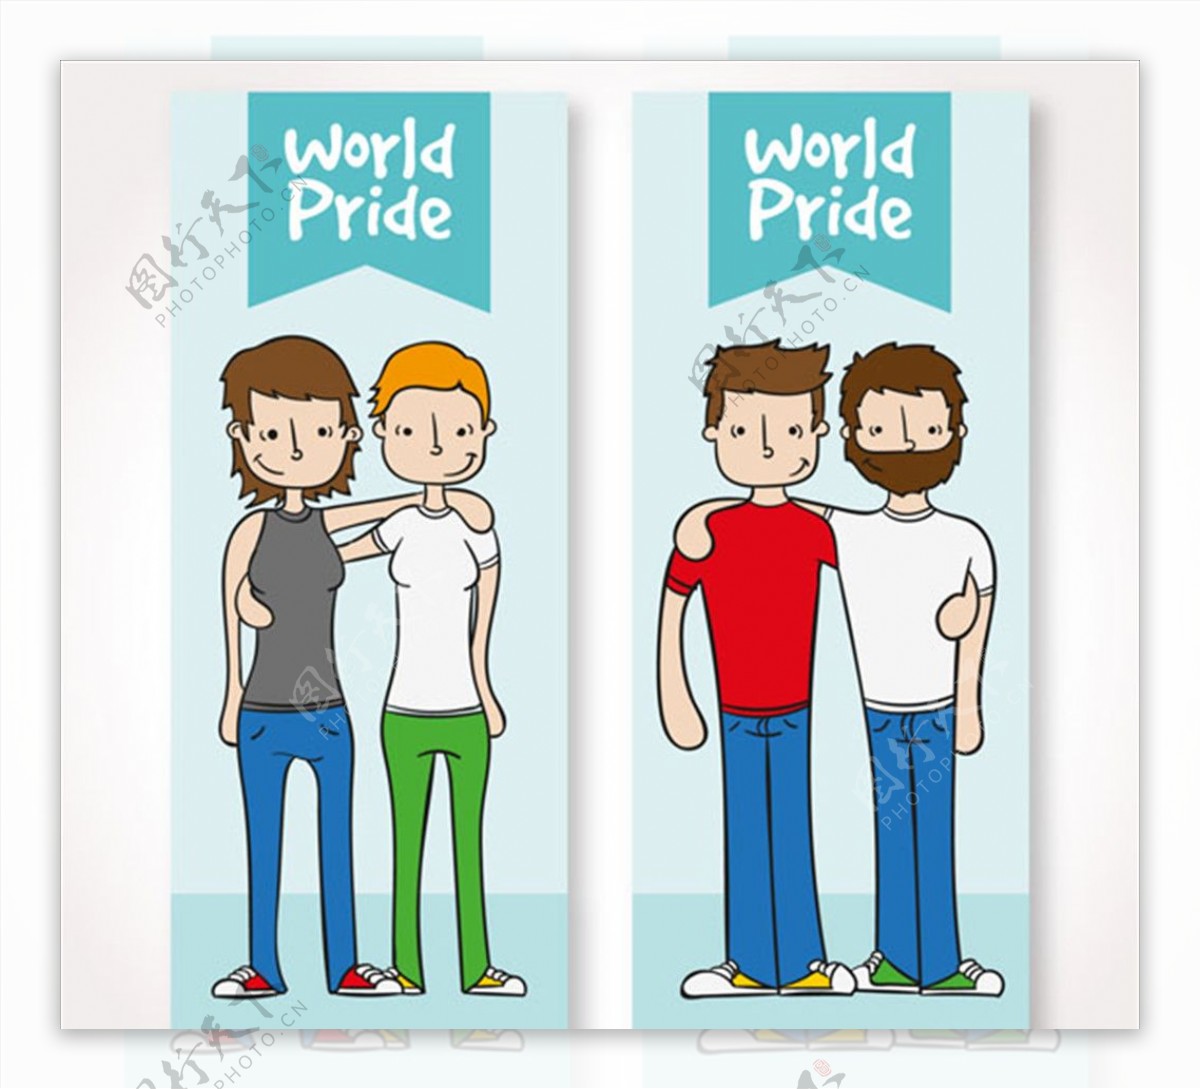 两款卡通同性恋情侣海报